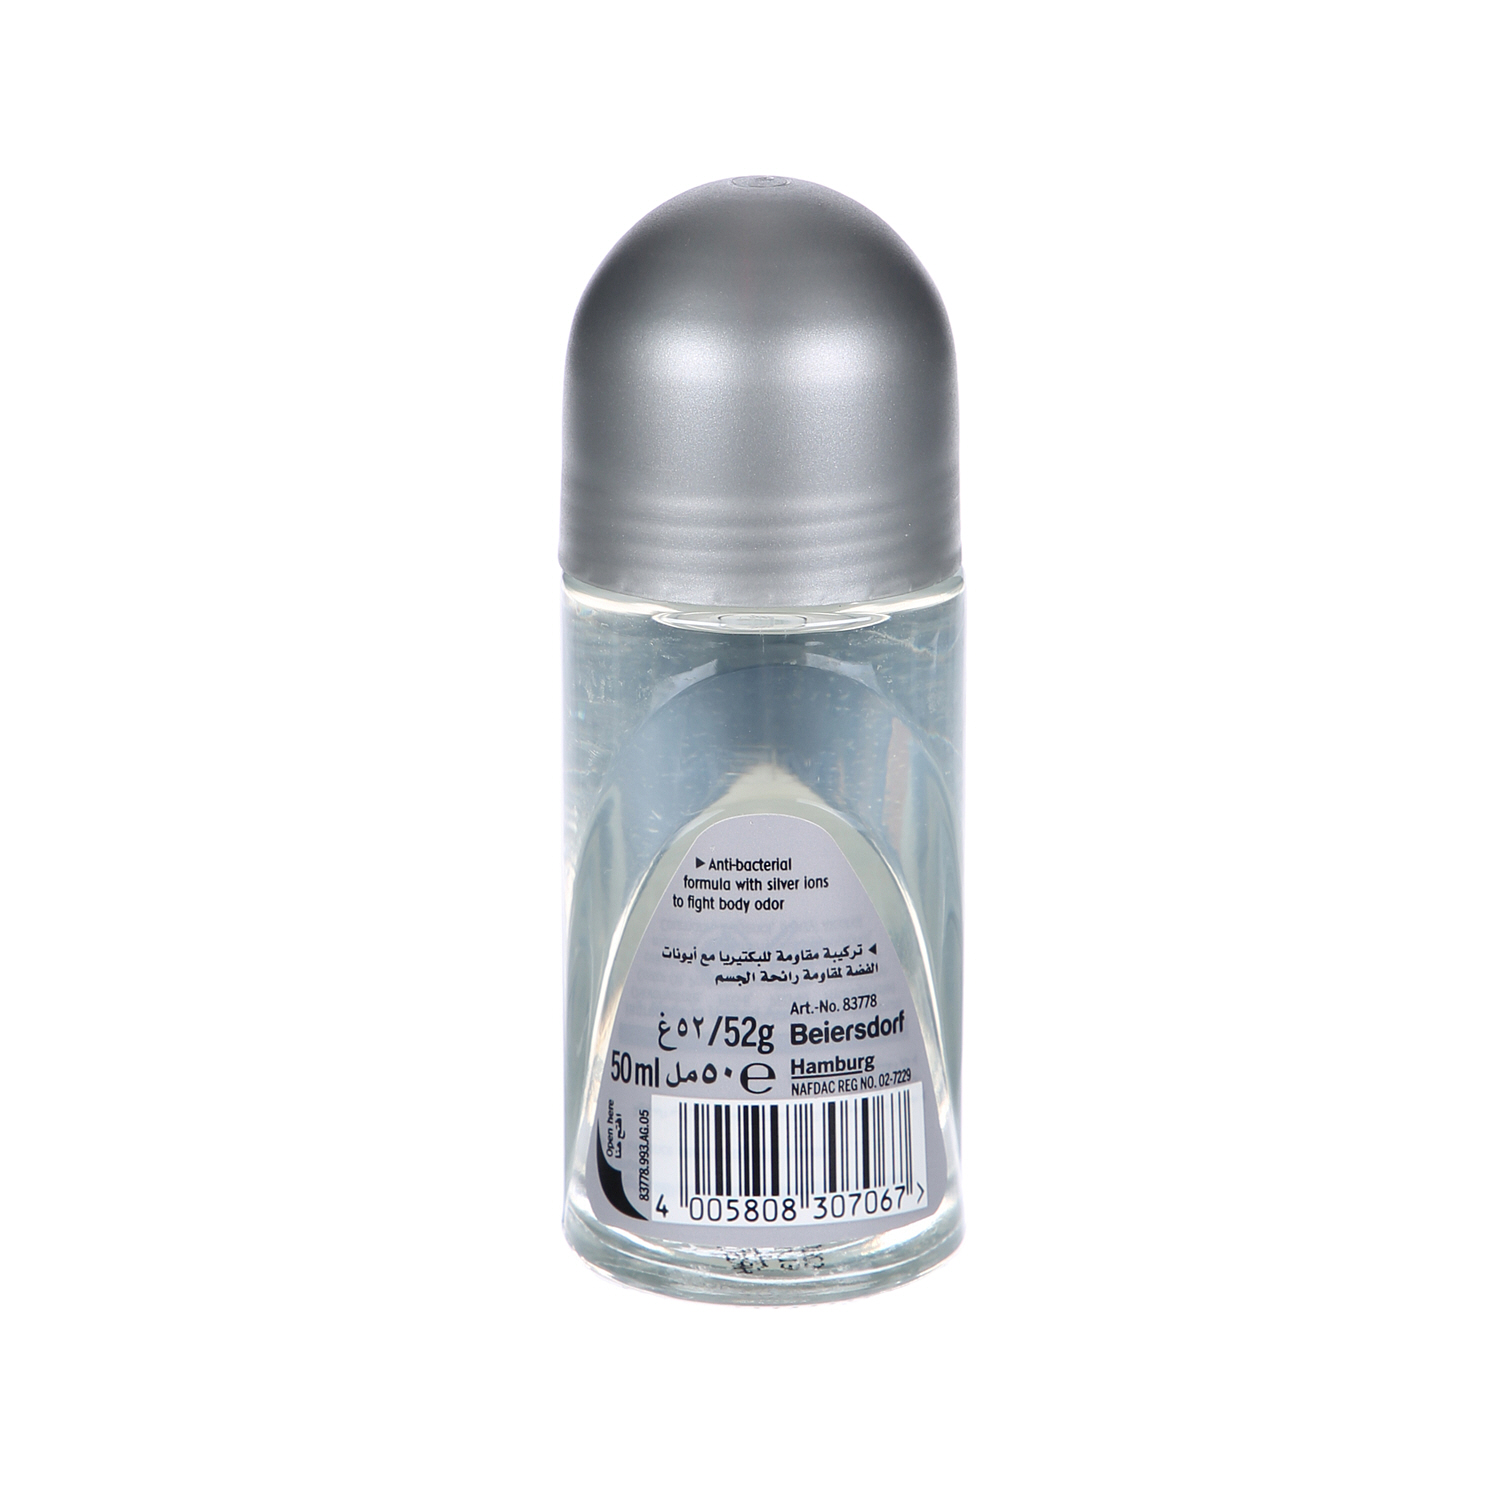 Nivea Deodorant Silver Protect Roll On Men 50 ml